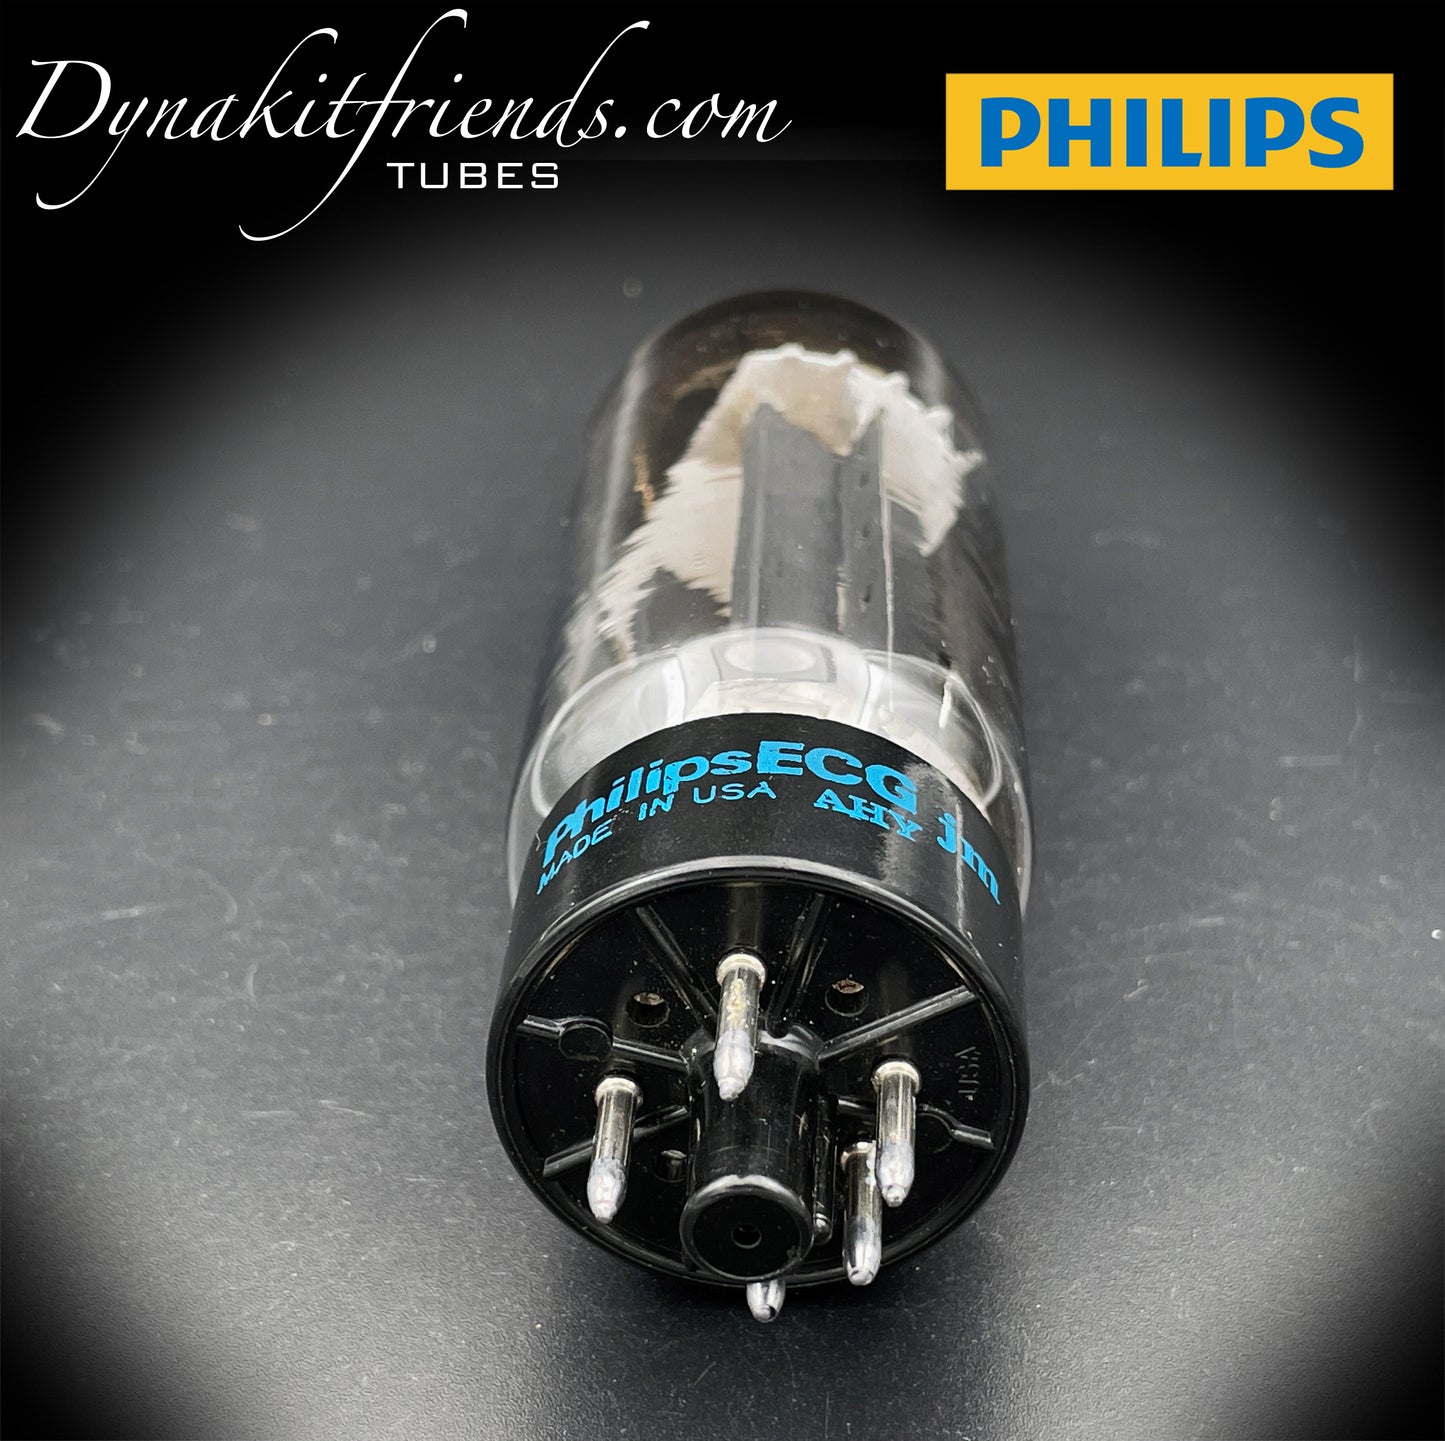 5U4 GB (5AS4A) PHILIPS ECG NOS Placas negras Rectificador de tubo probado con doble halo Getter Hecho en EE. UU.